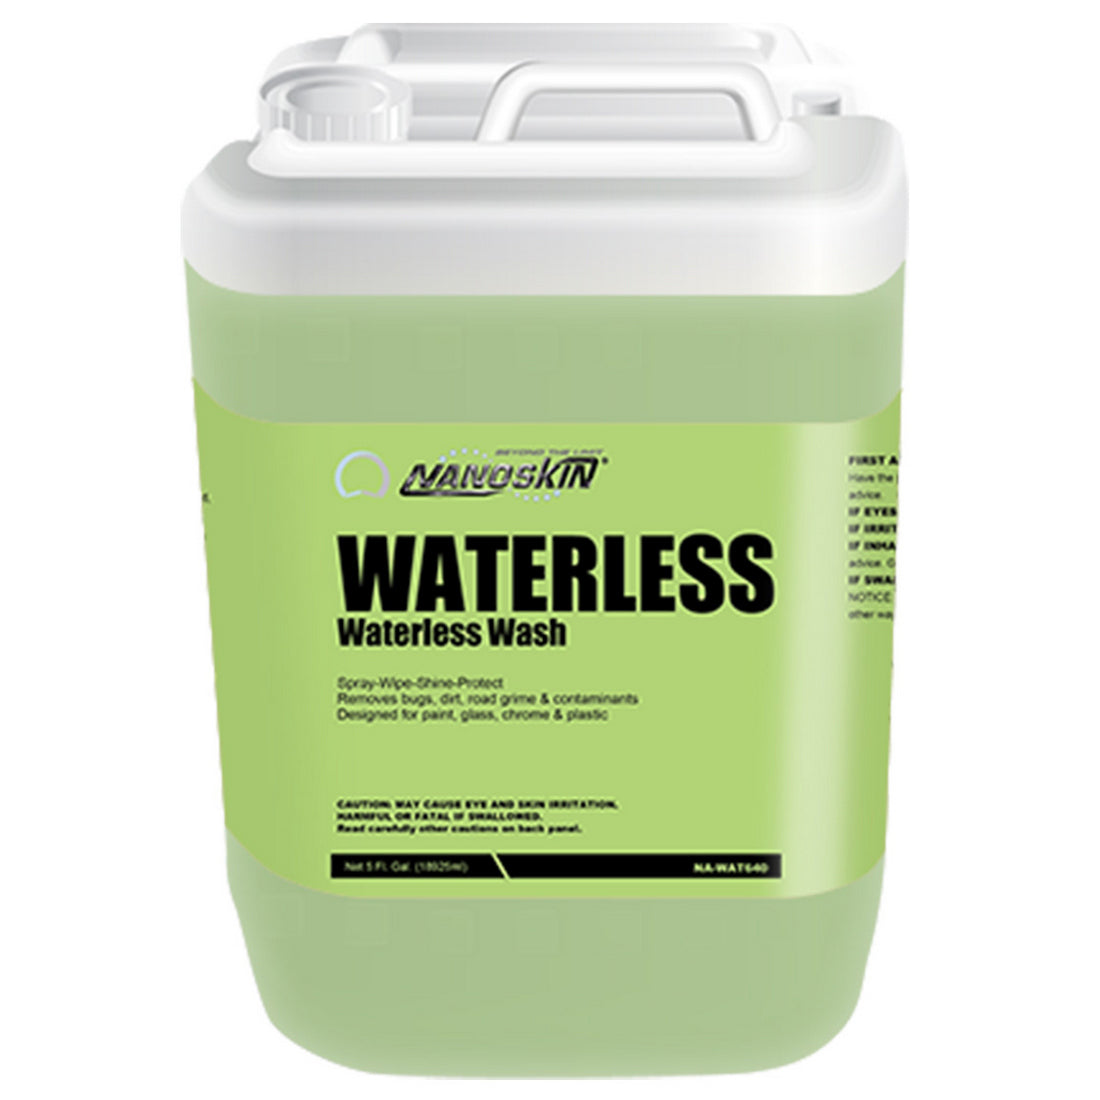 WATERLESS Waterless Wash 4:1